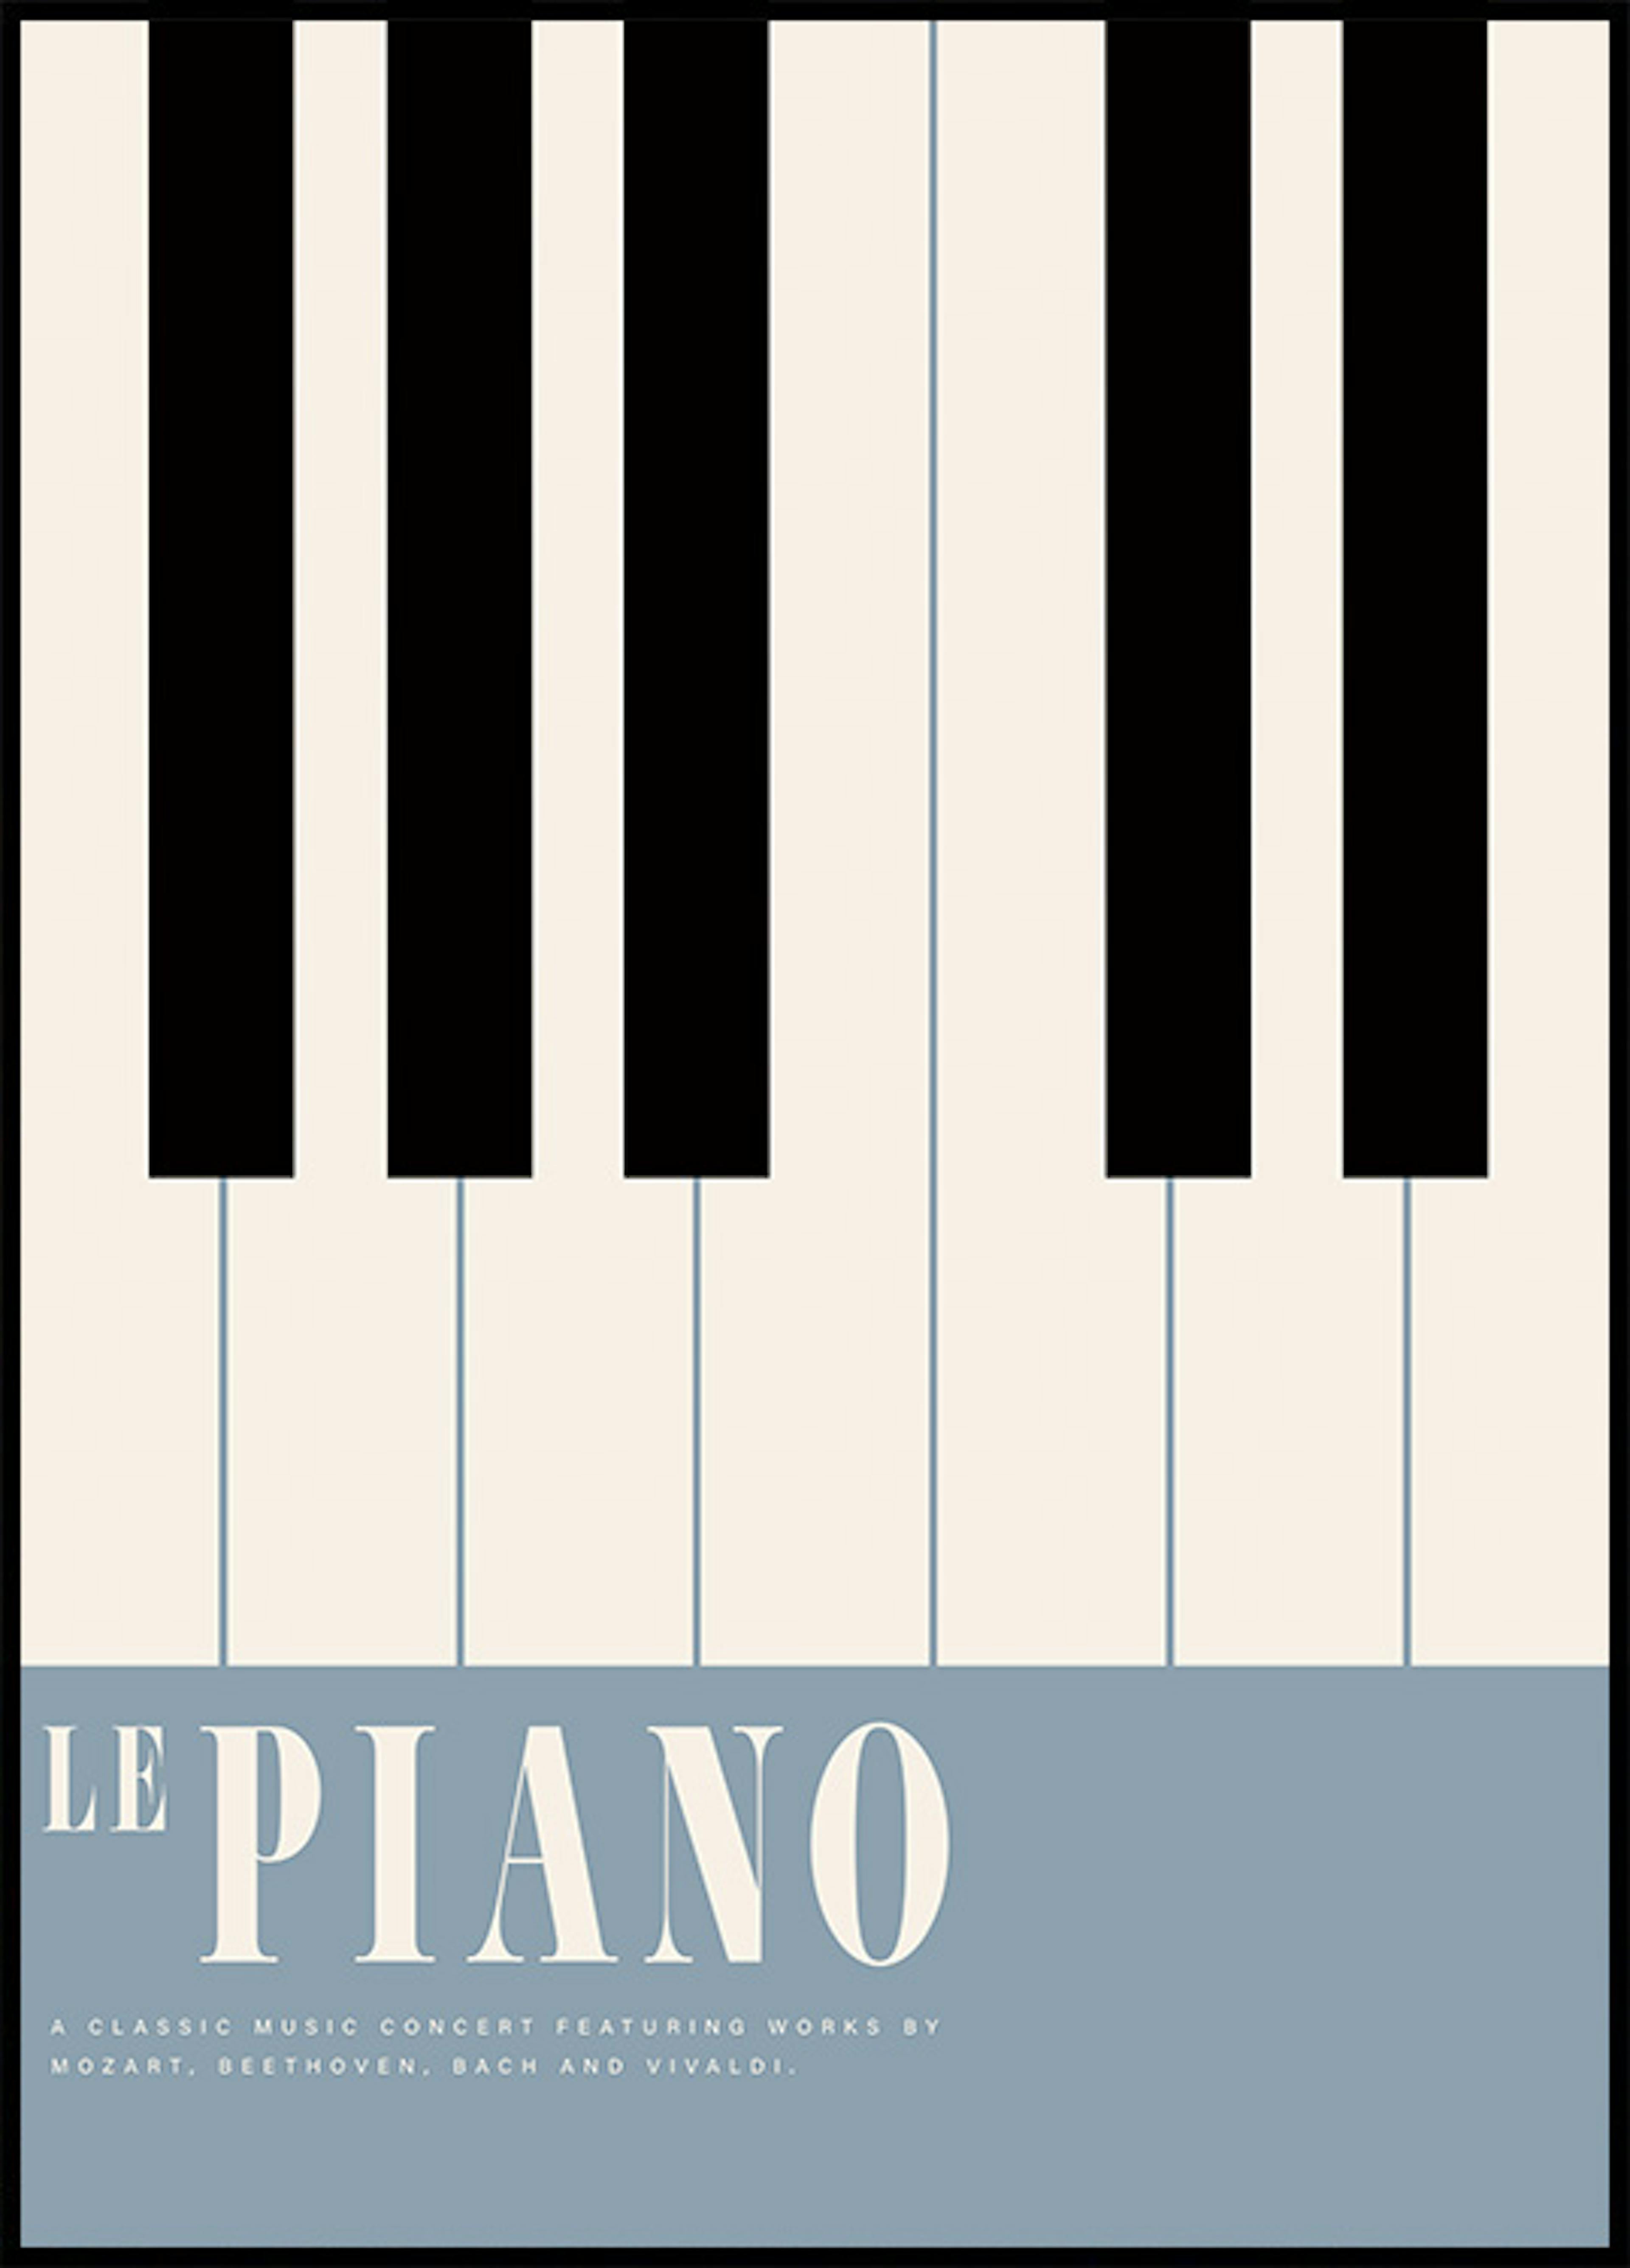 Le Piano ポスター 0